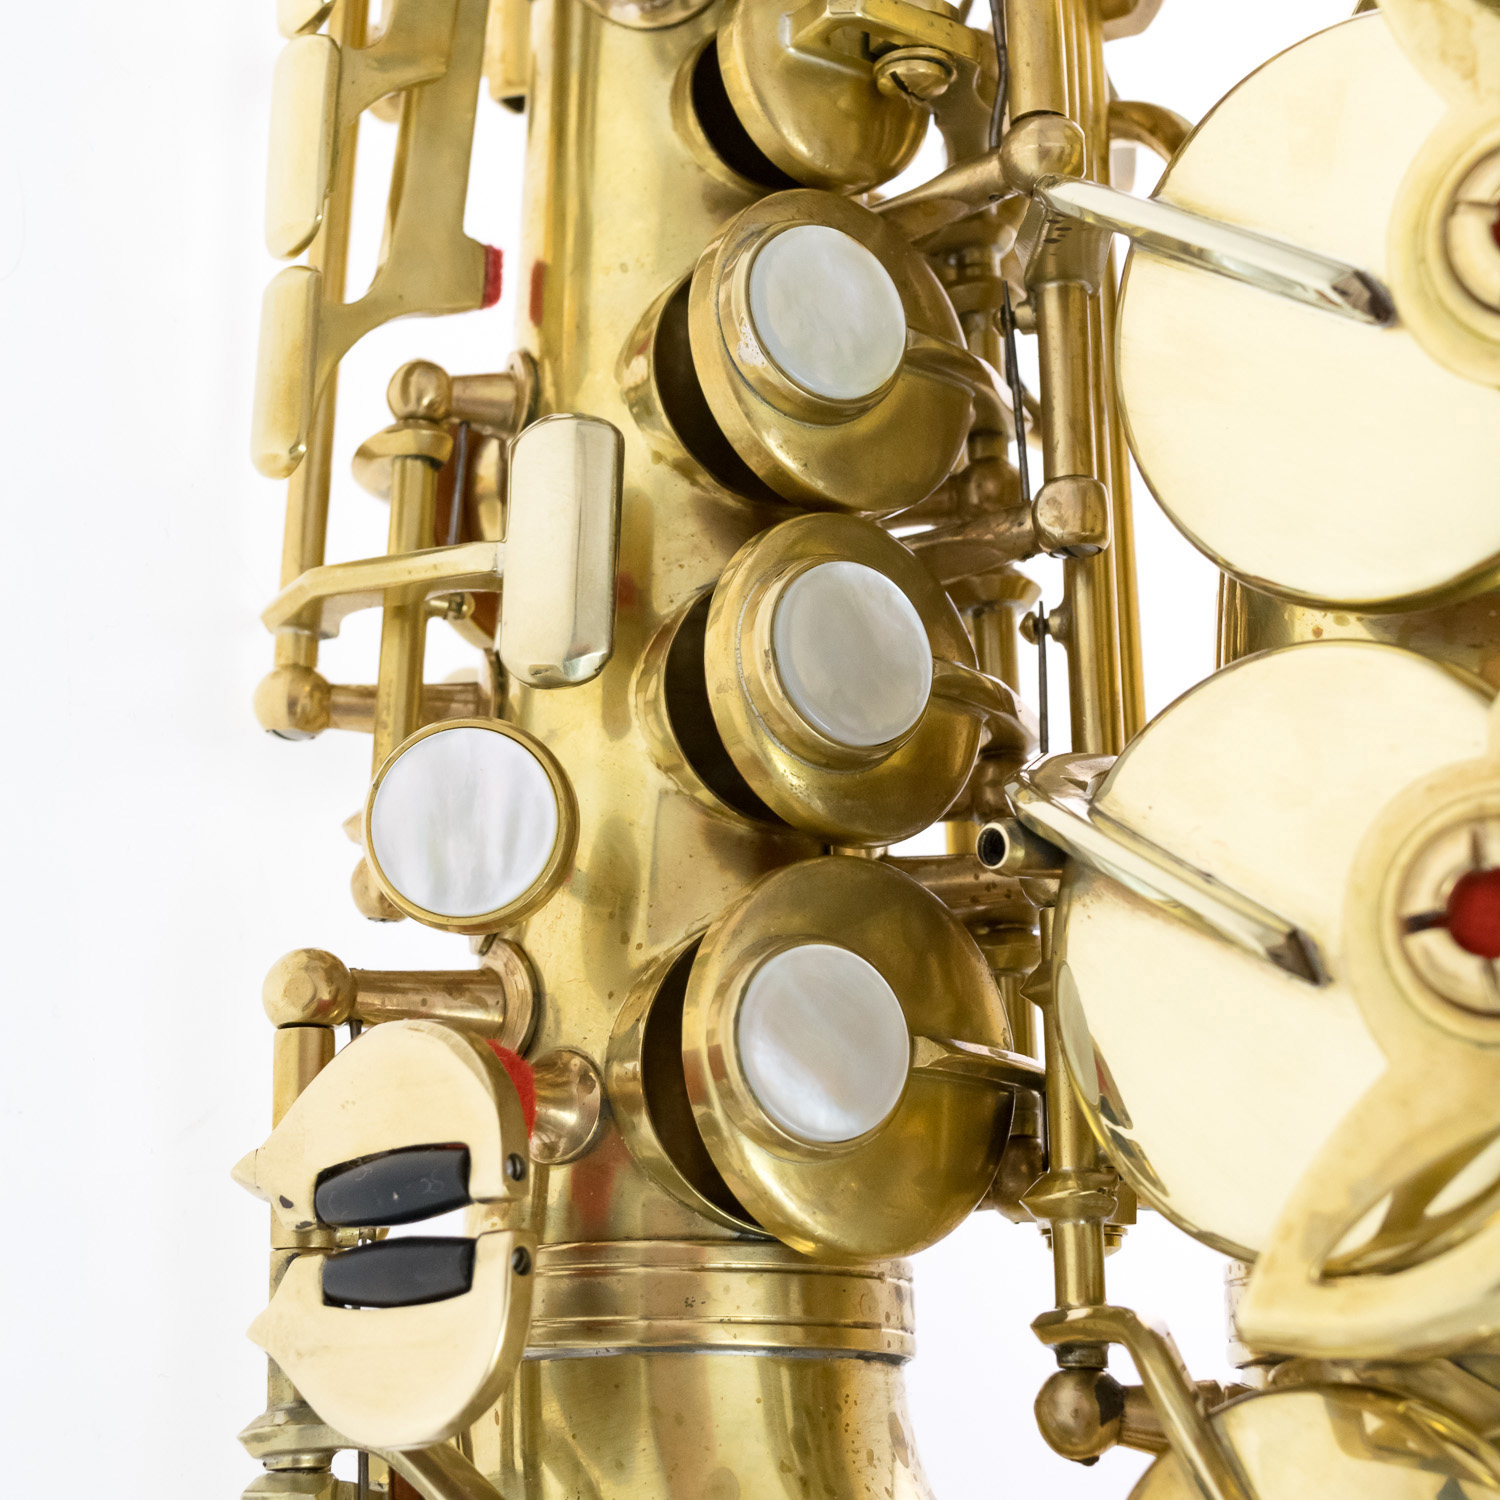 Rampone & Cazzani Curved Soprano Sax - R1 Jazz - Brushed Brass